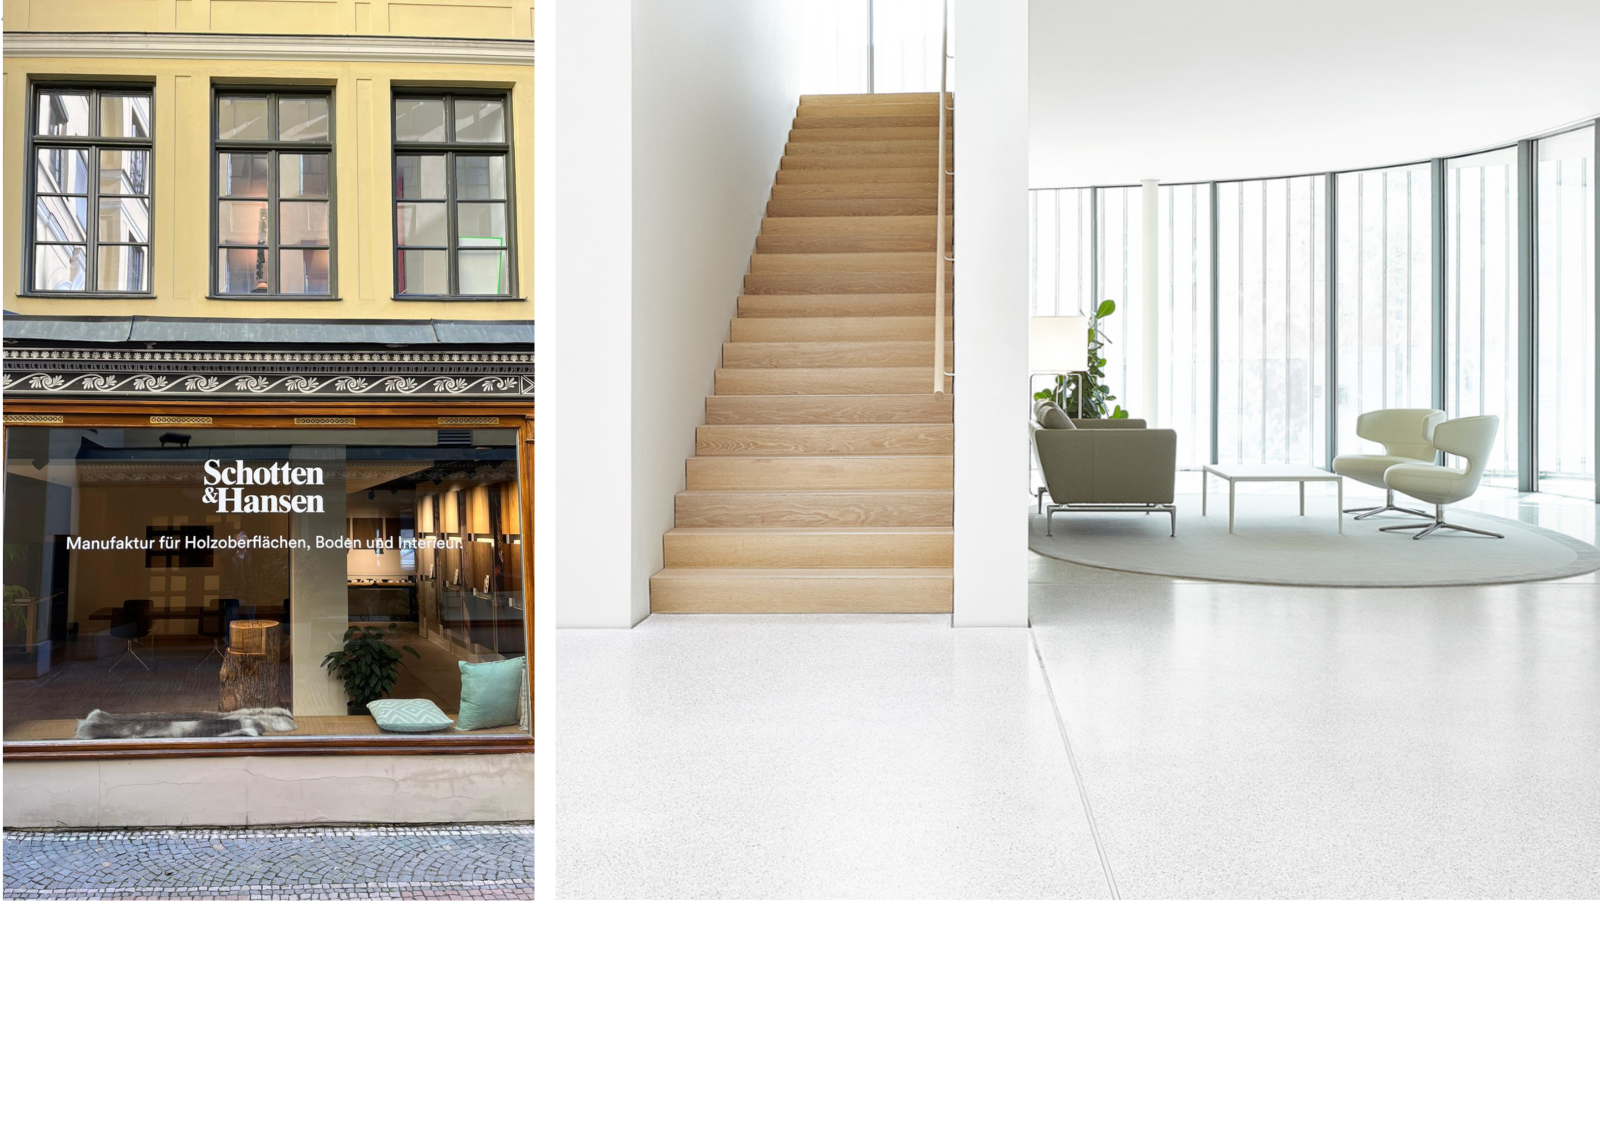 Auch der Holzboden und die Wandverkleidungen des Stiftungsgebäudes kommen aus der Manufaktur für Holzoberflächen, Boden und Interieur, Schotten & Hansen.